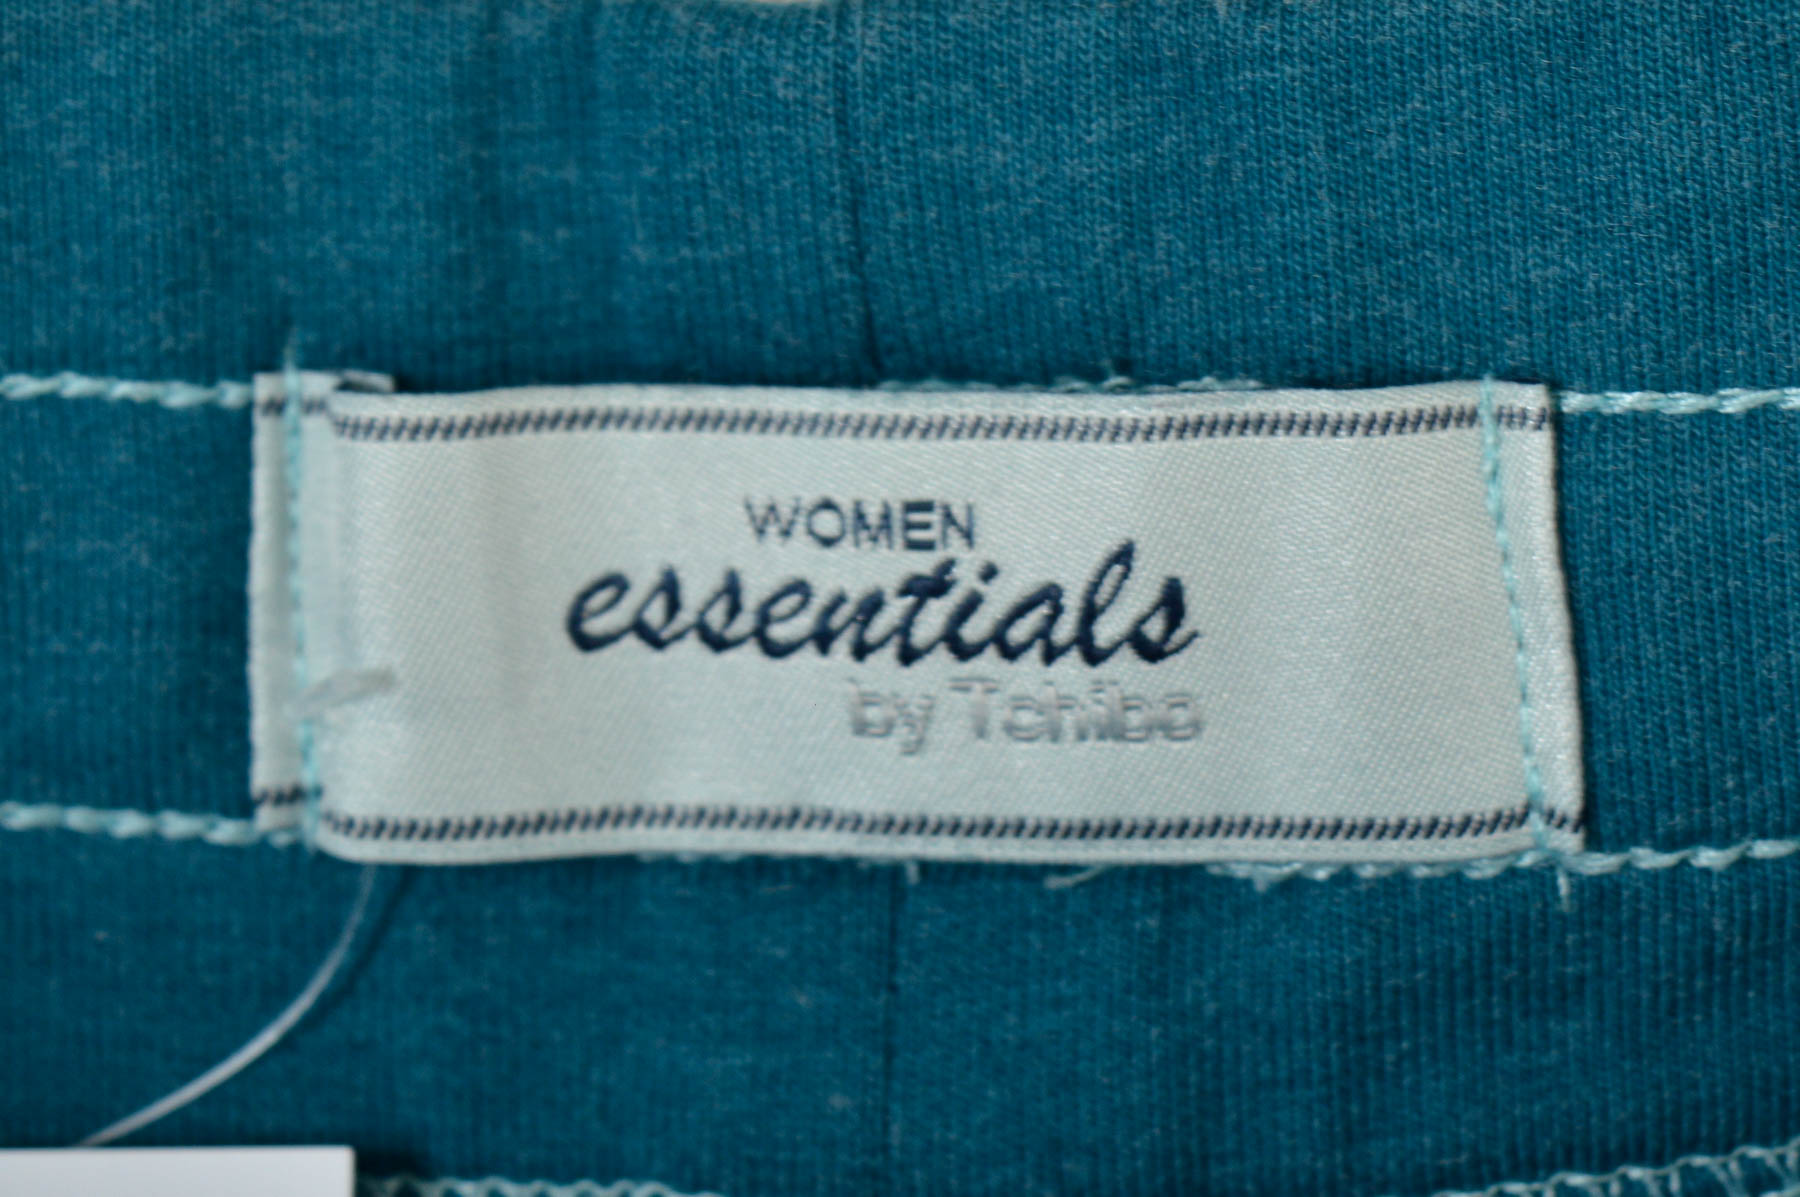 Krótkie spodnie damskie - WOMEN essentials by Tchibo - 2